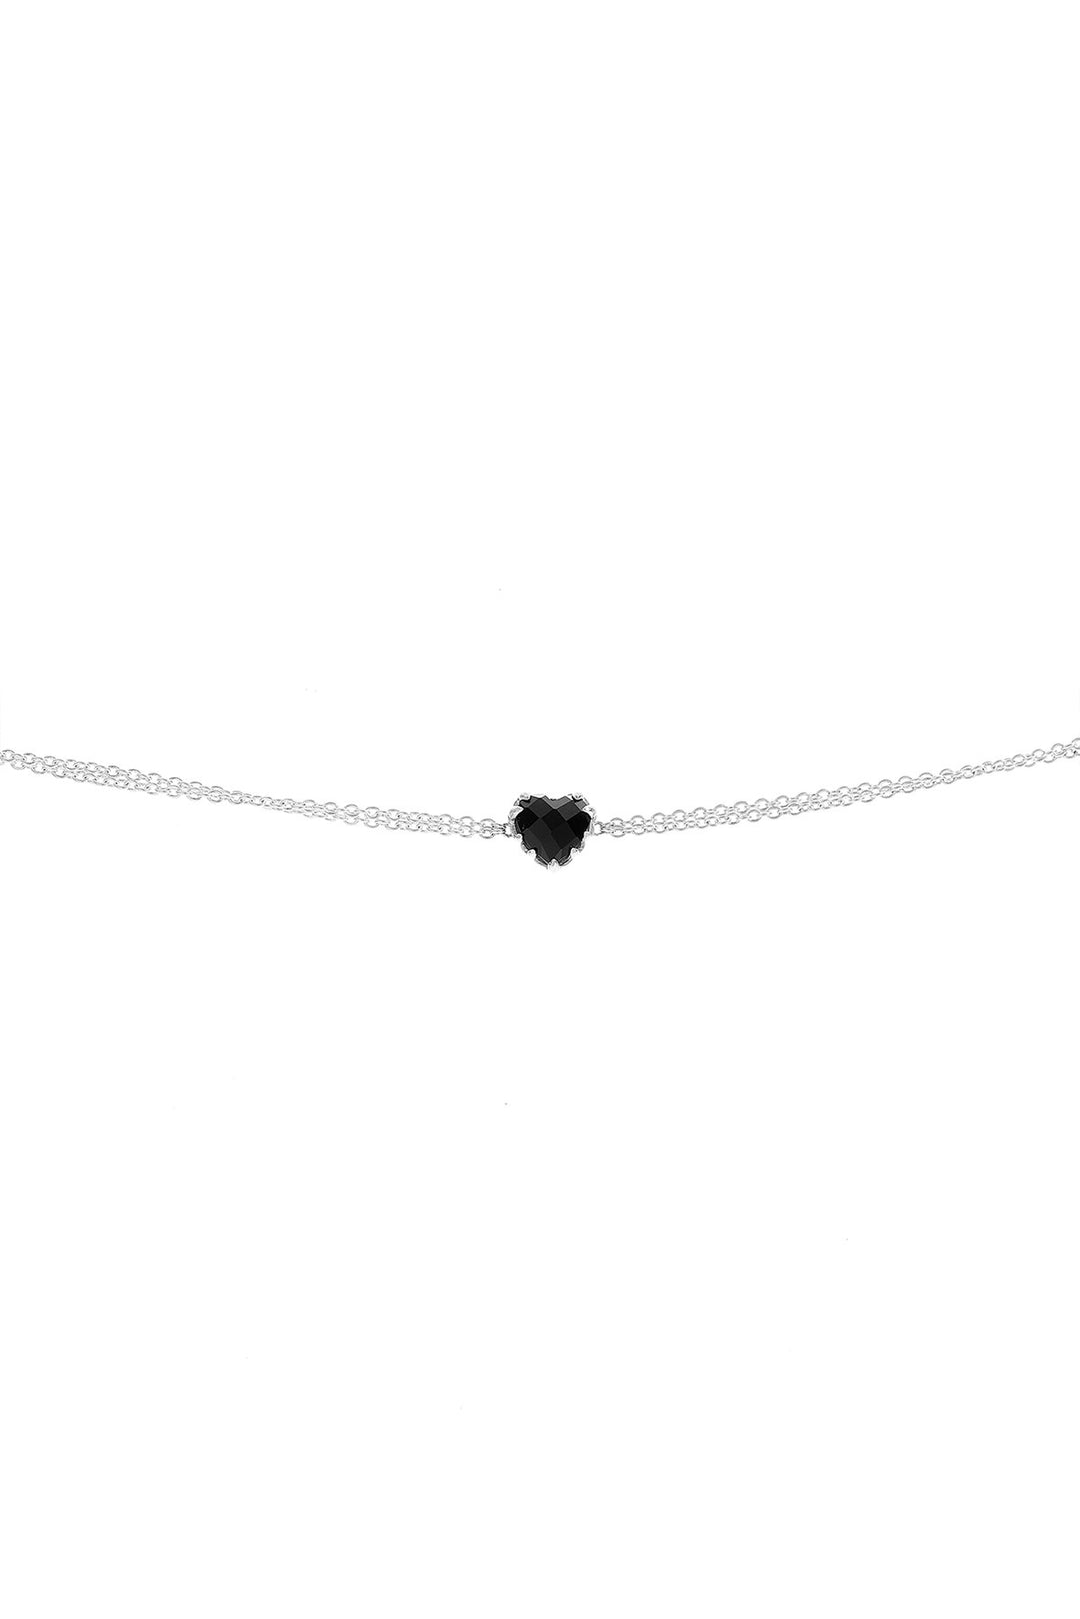 SGC Love Claw Bracelet - Onyx